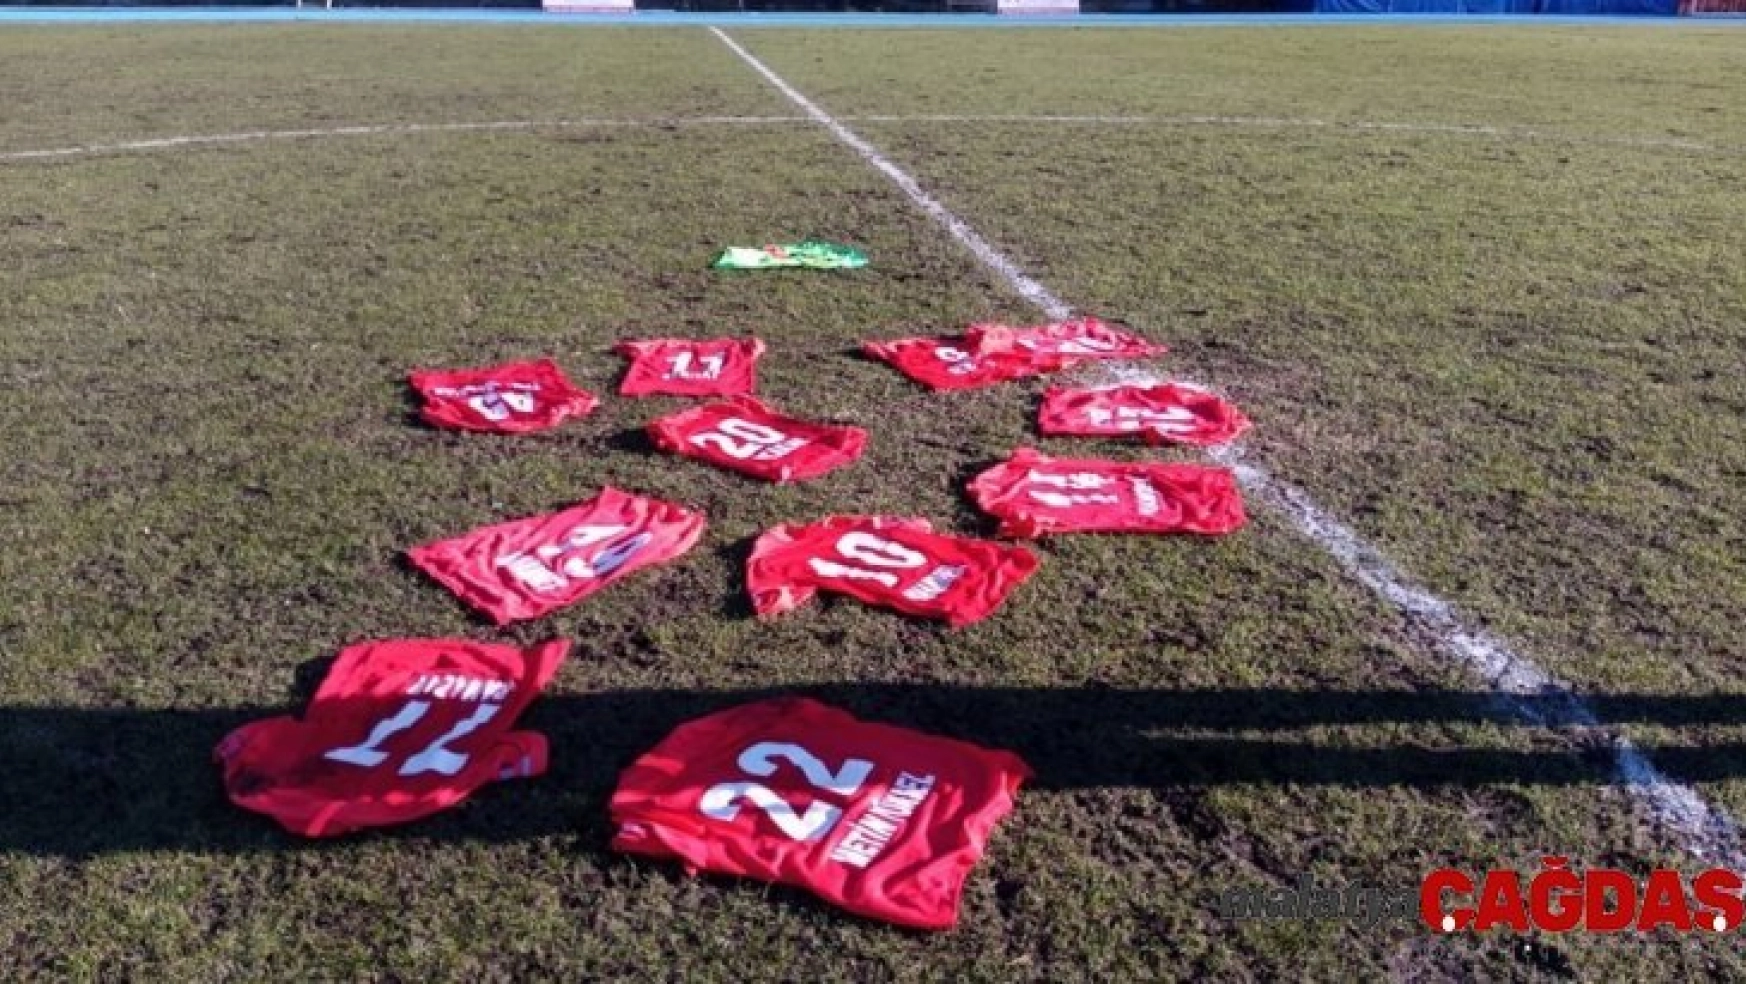 Zonguldak Kömürsporlu futbolcular formalarını sahaya bıraktı